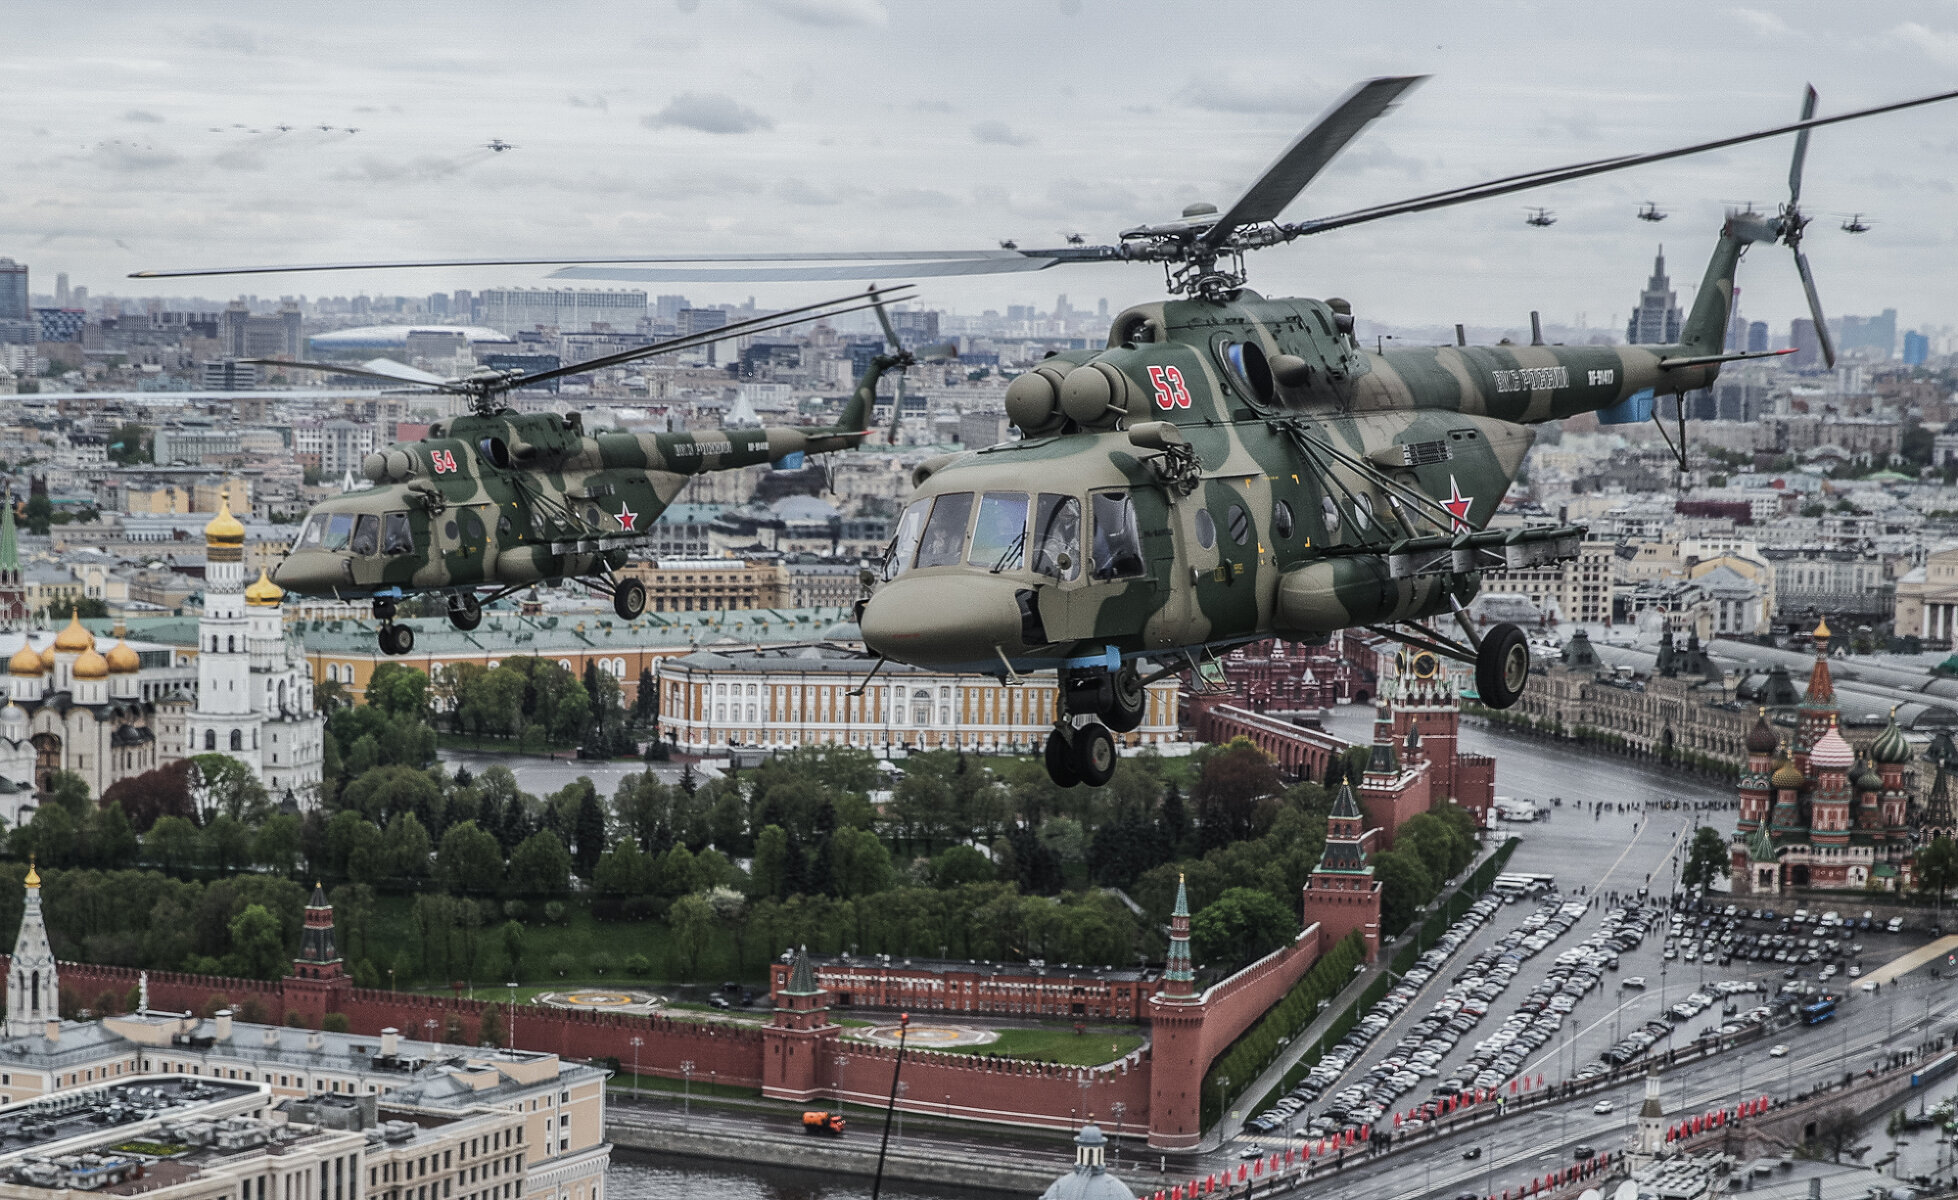 <p>Москва. Многоцелевые вертолеты Ми-8 во время авиапарада</p>